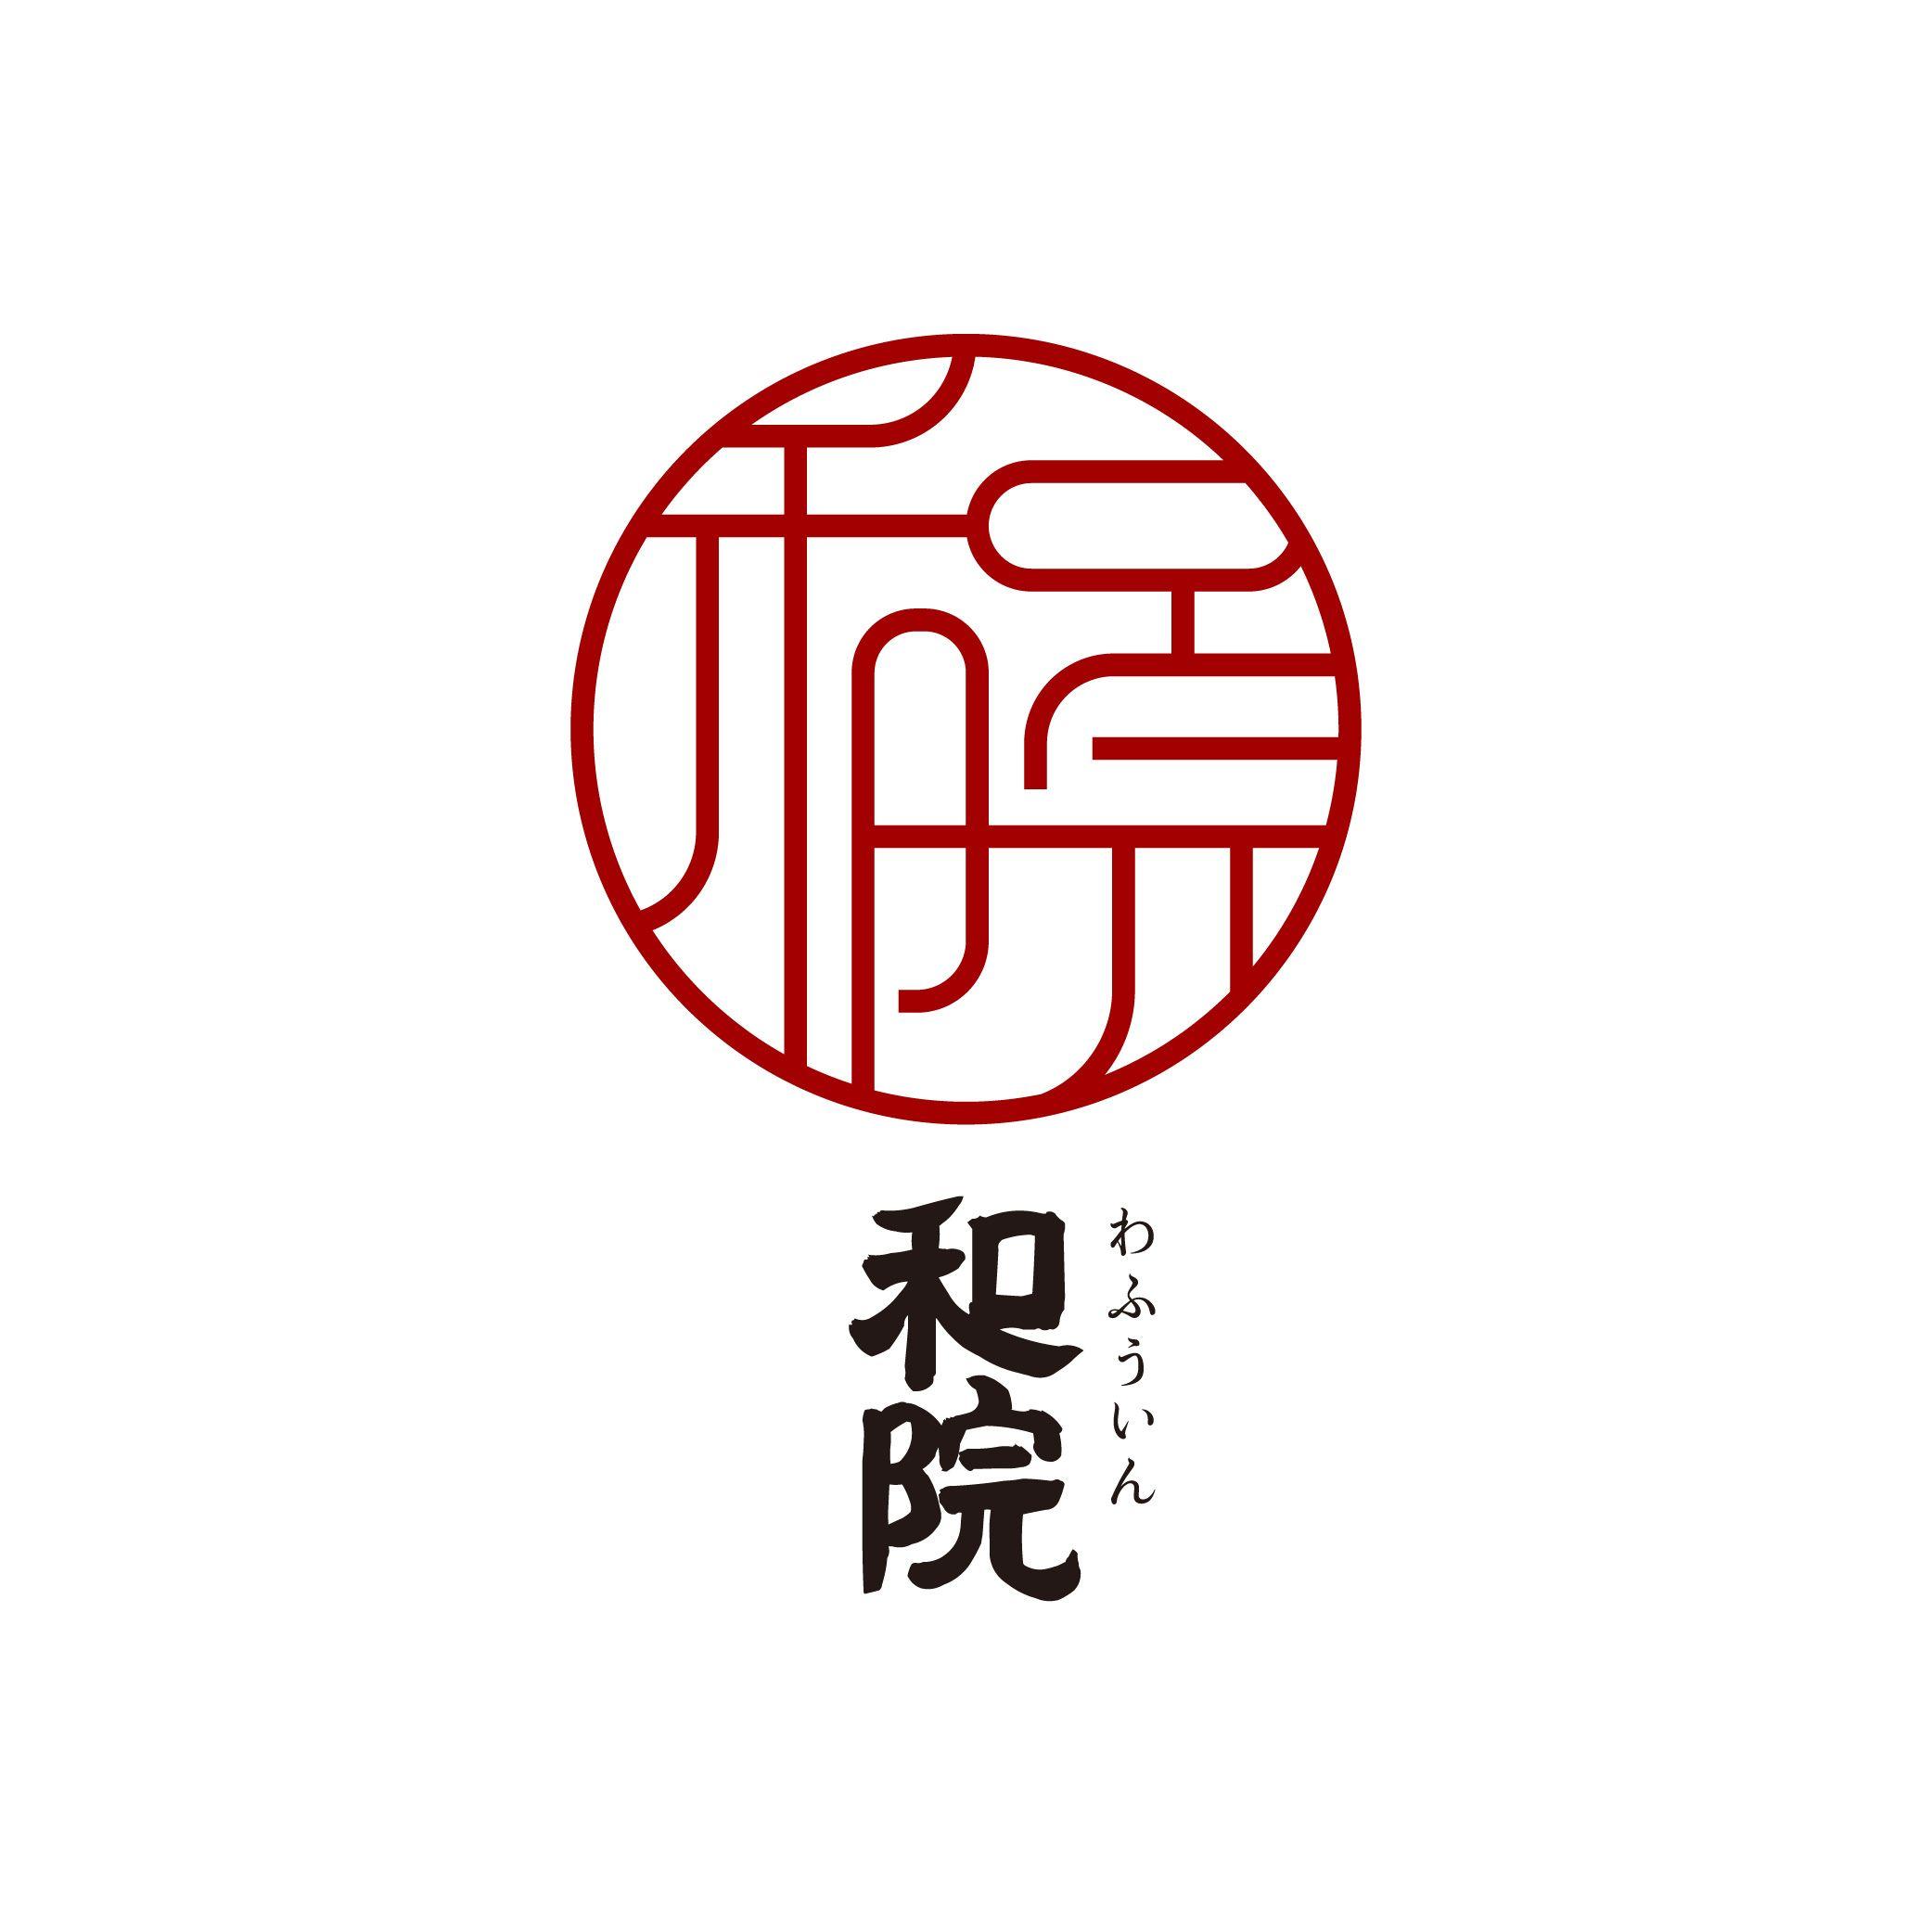 chinese letter logo maker